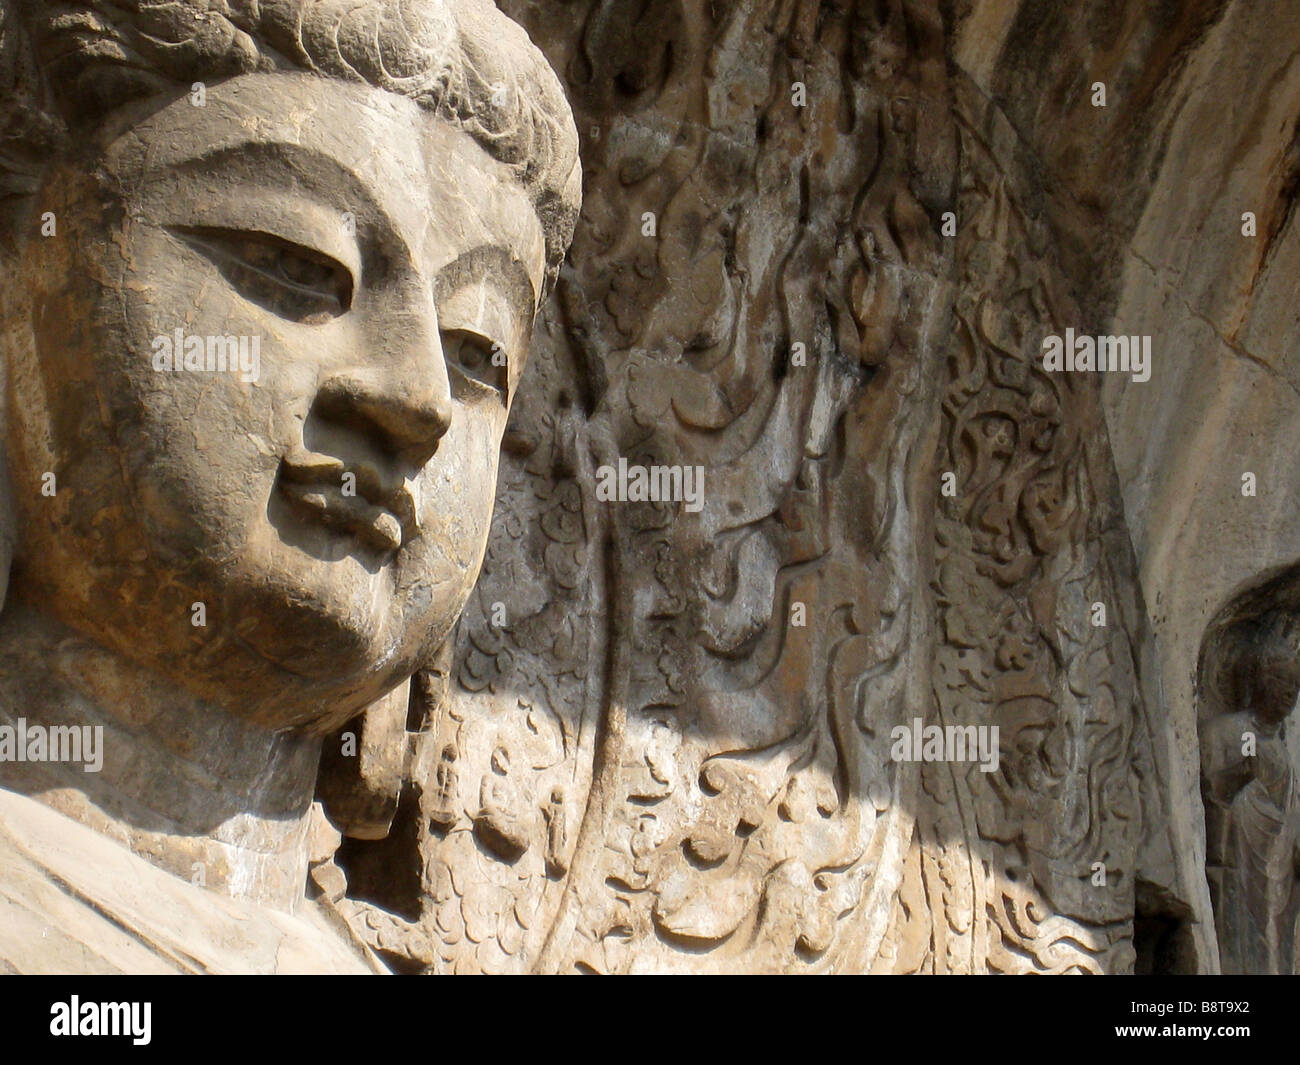 Bhuddist carvings at Longmen Caves, Luoyang, China Stock Photo - Alamy